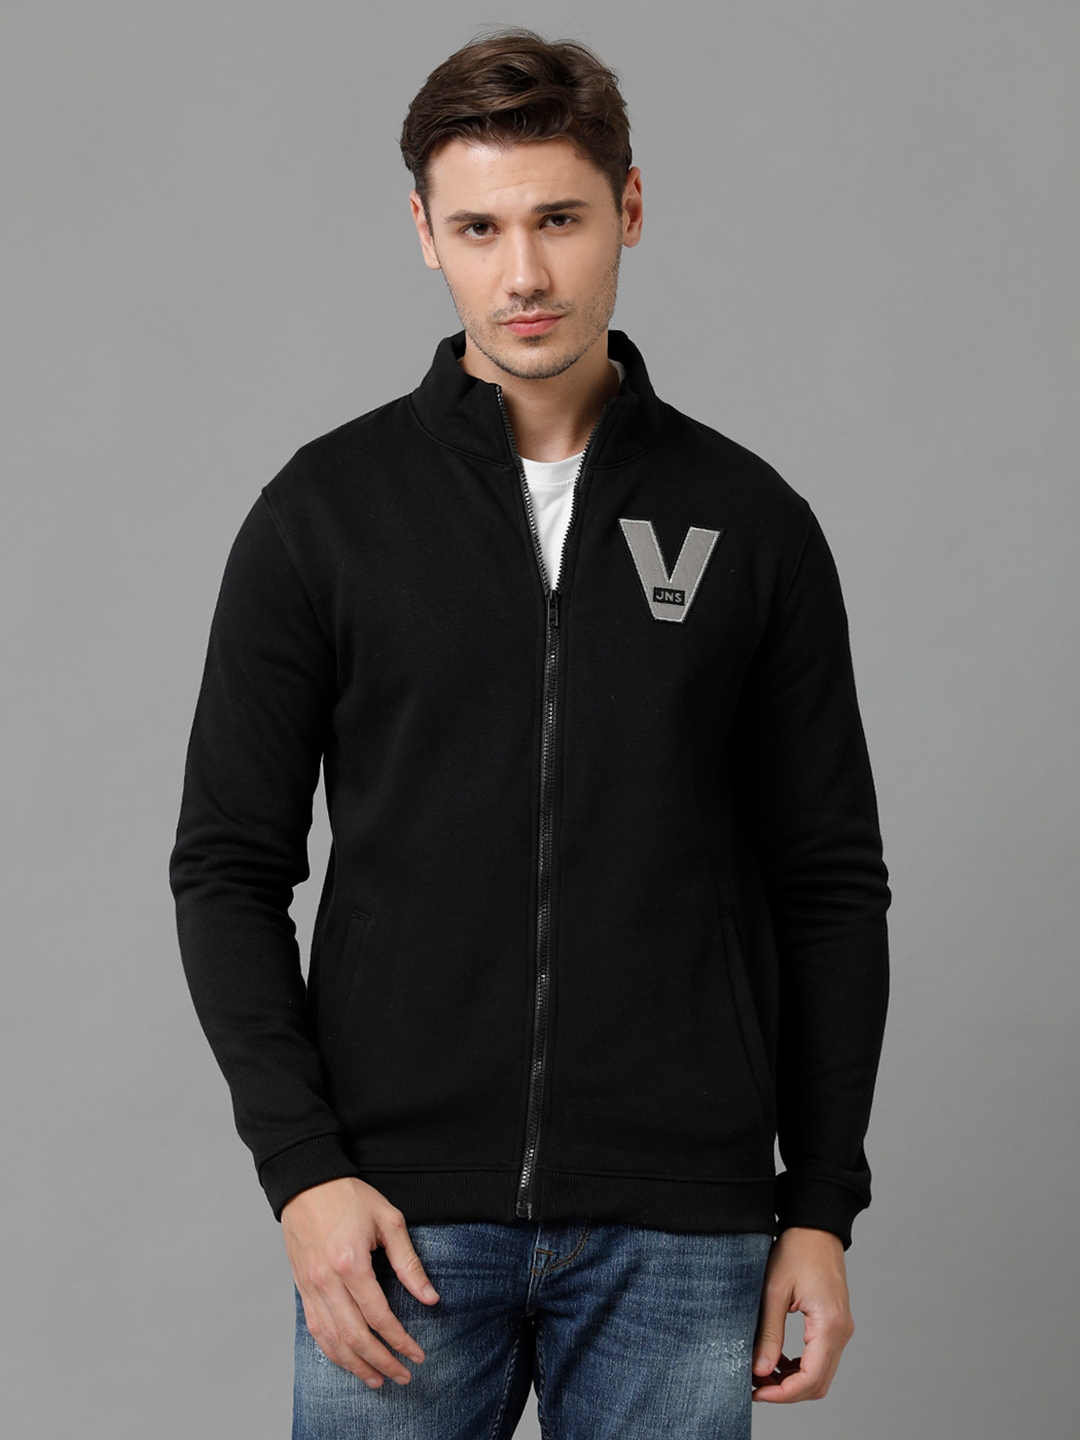 VOI Jeans Men's Solid Deep Black Cotton Blend Fleece Regular Fit Sweatshirt